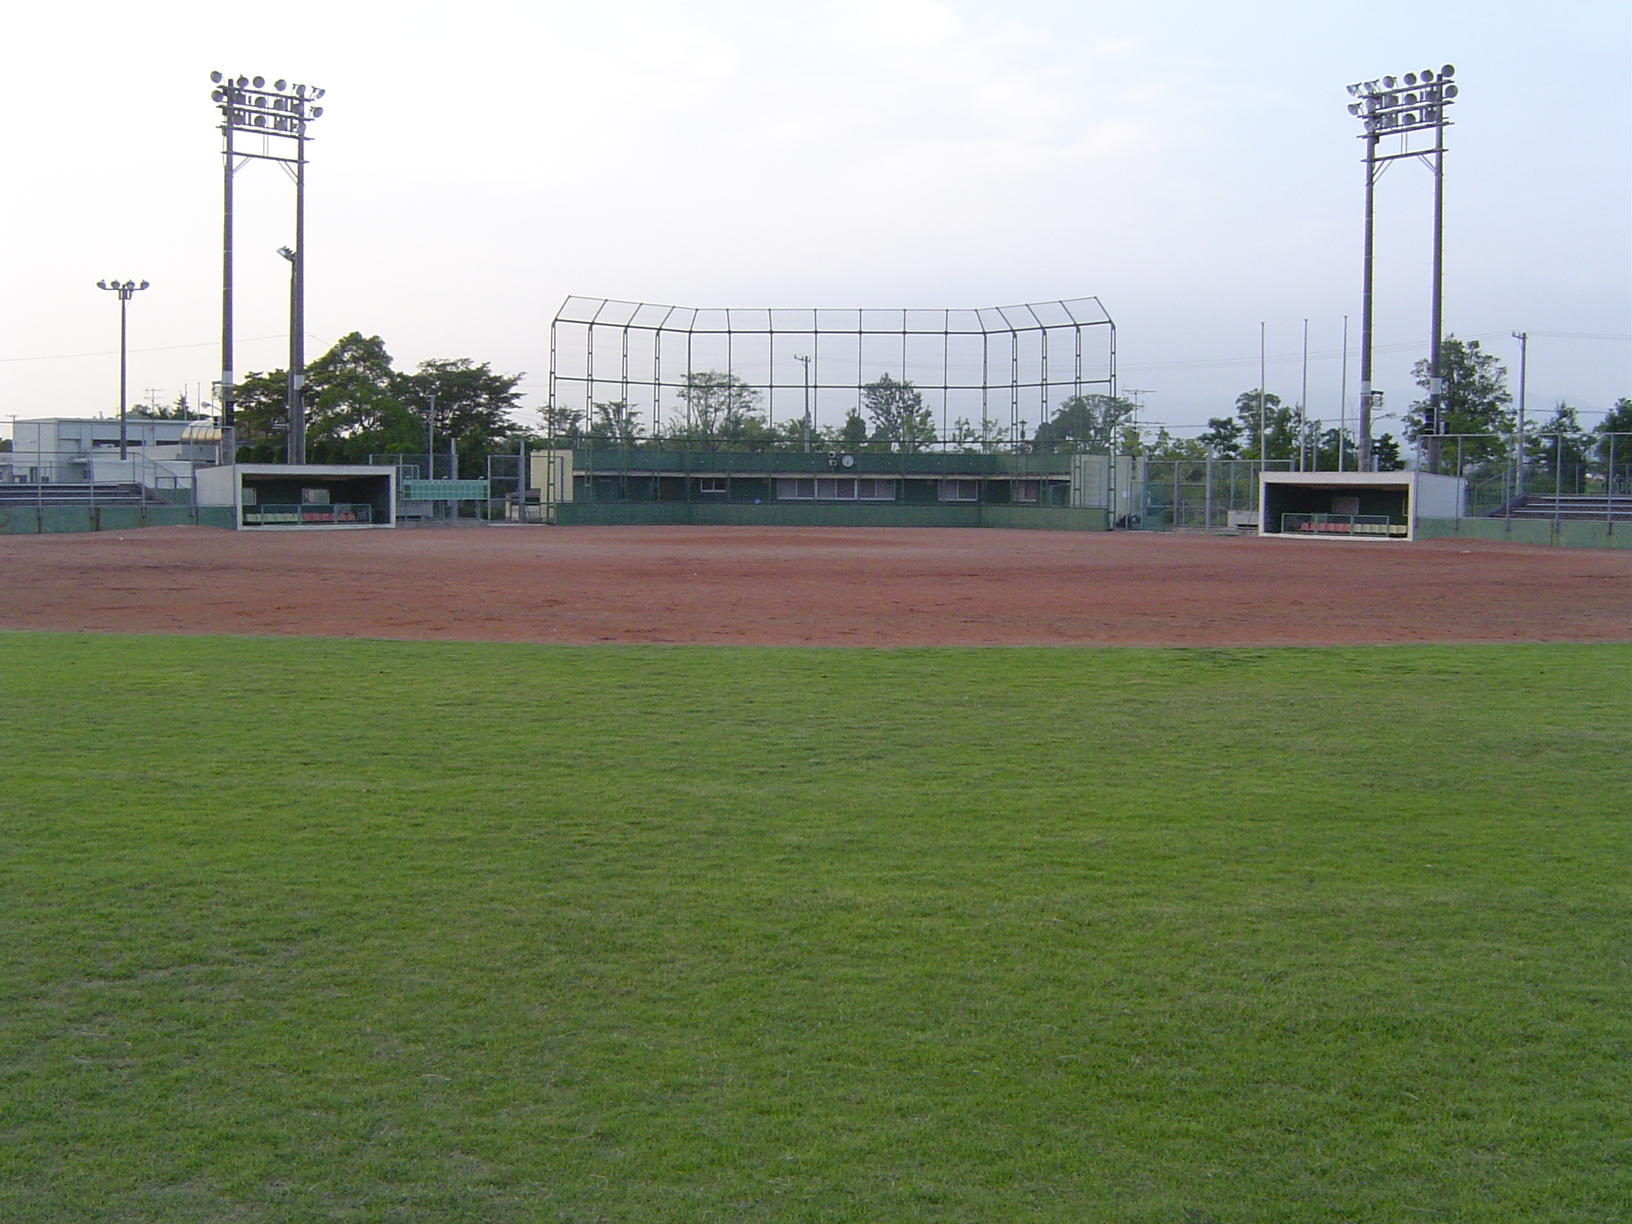 中央にバックネットがありその両サイドに両軍ベンチがありその上には照明が写っている東員町中央球場の写真